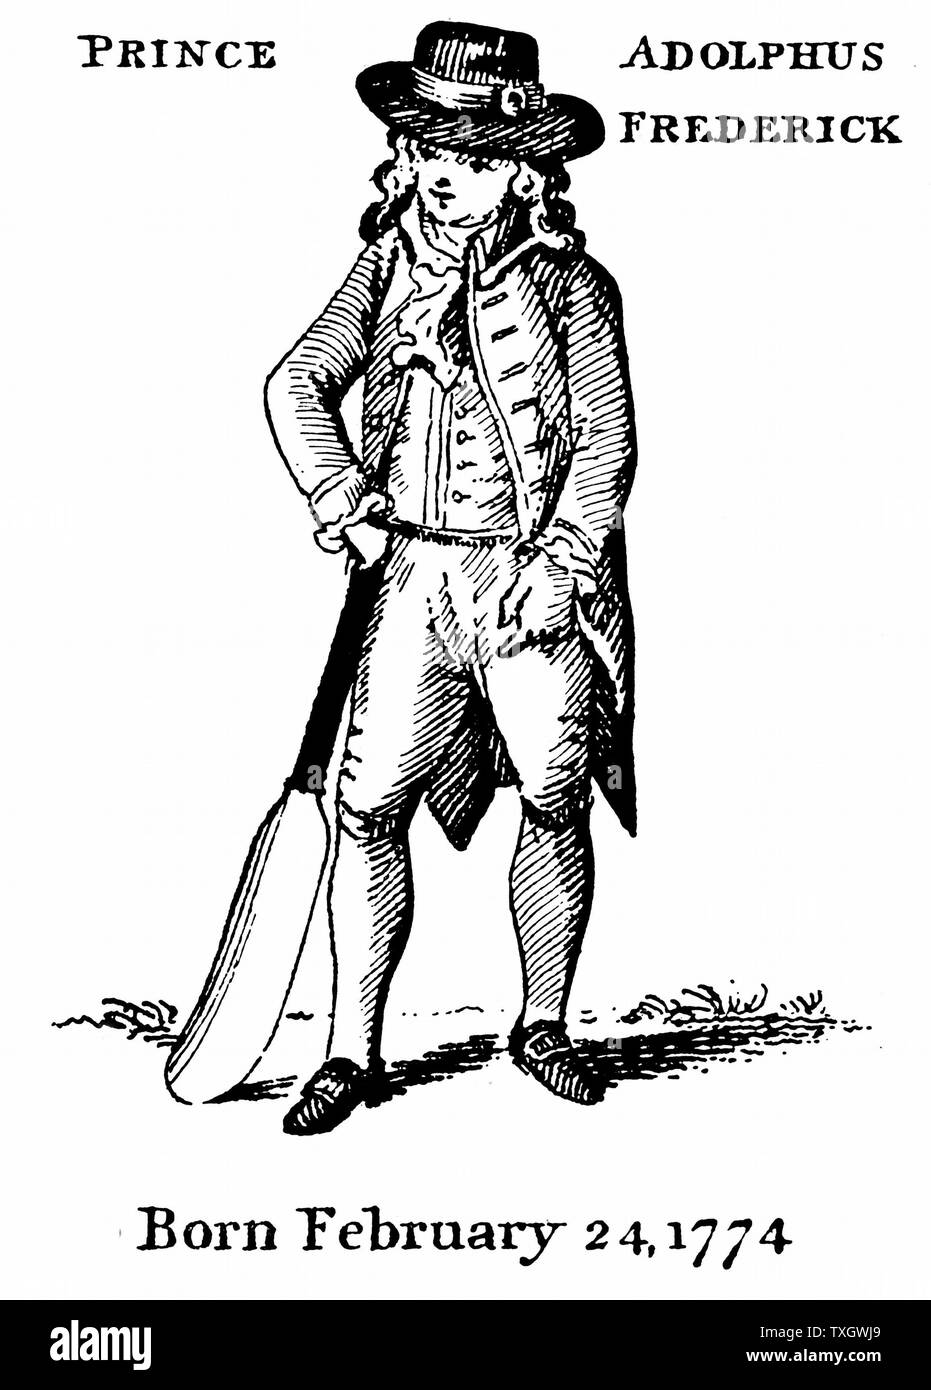 Adolphus Frederick, duc de Cambridge (1774-1850) prince anglais, septième fils de George III à partir de la fin du 18e siècle montrant l'impression comme un jeune homme avec une batte de cricket Banque D'Images